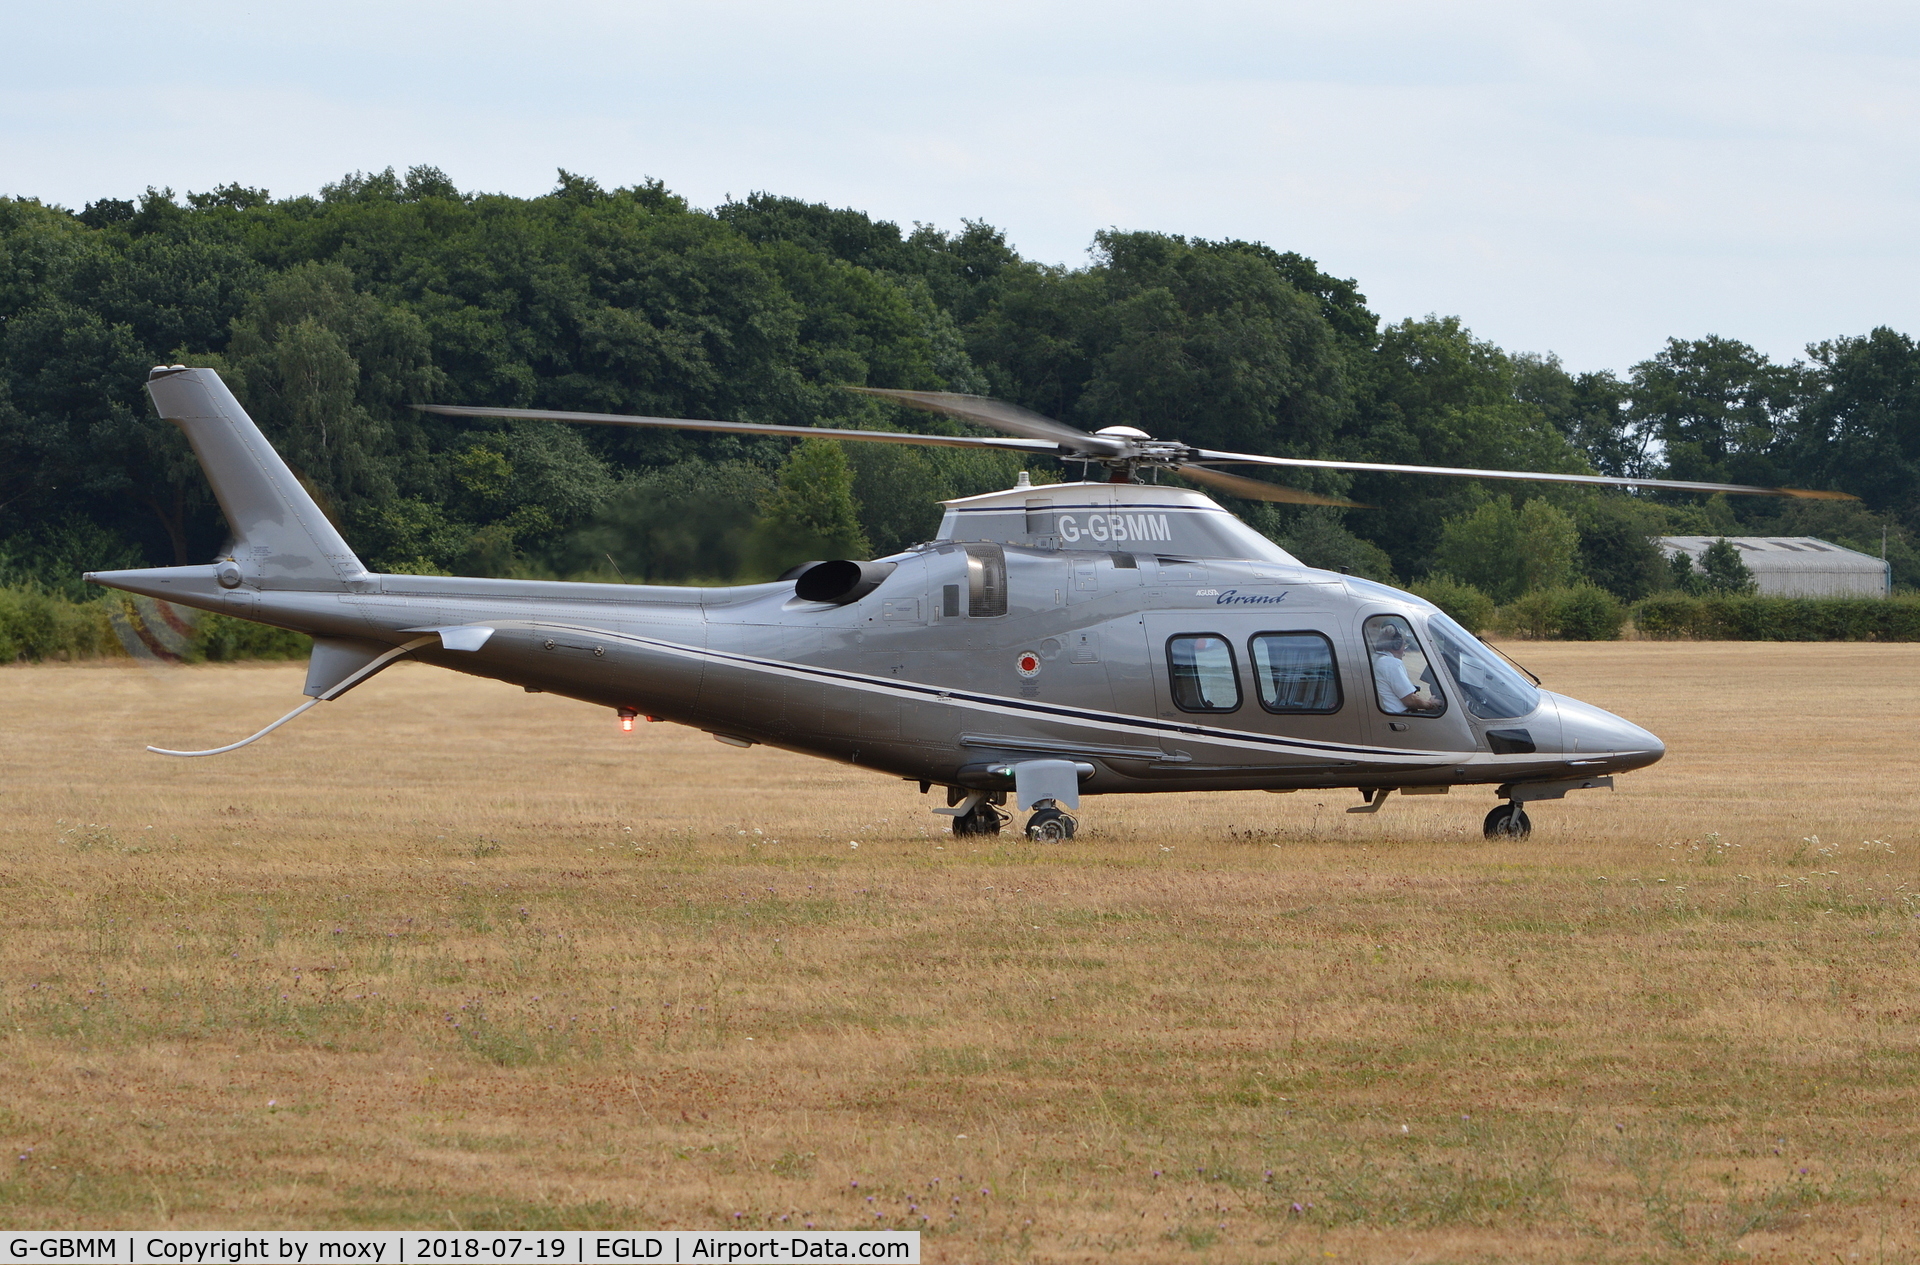 G-GBMM, 2005 Agusta A-109S Grand C/N 22009, Agusta A-109S Grand at Denham.